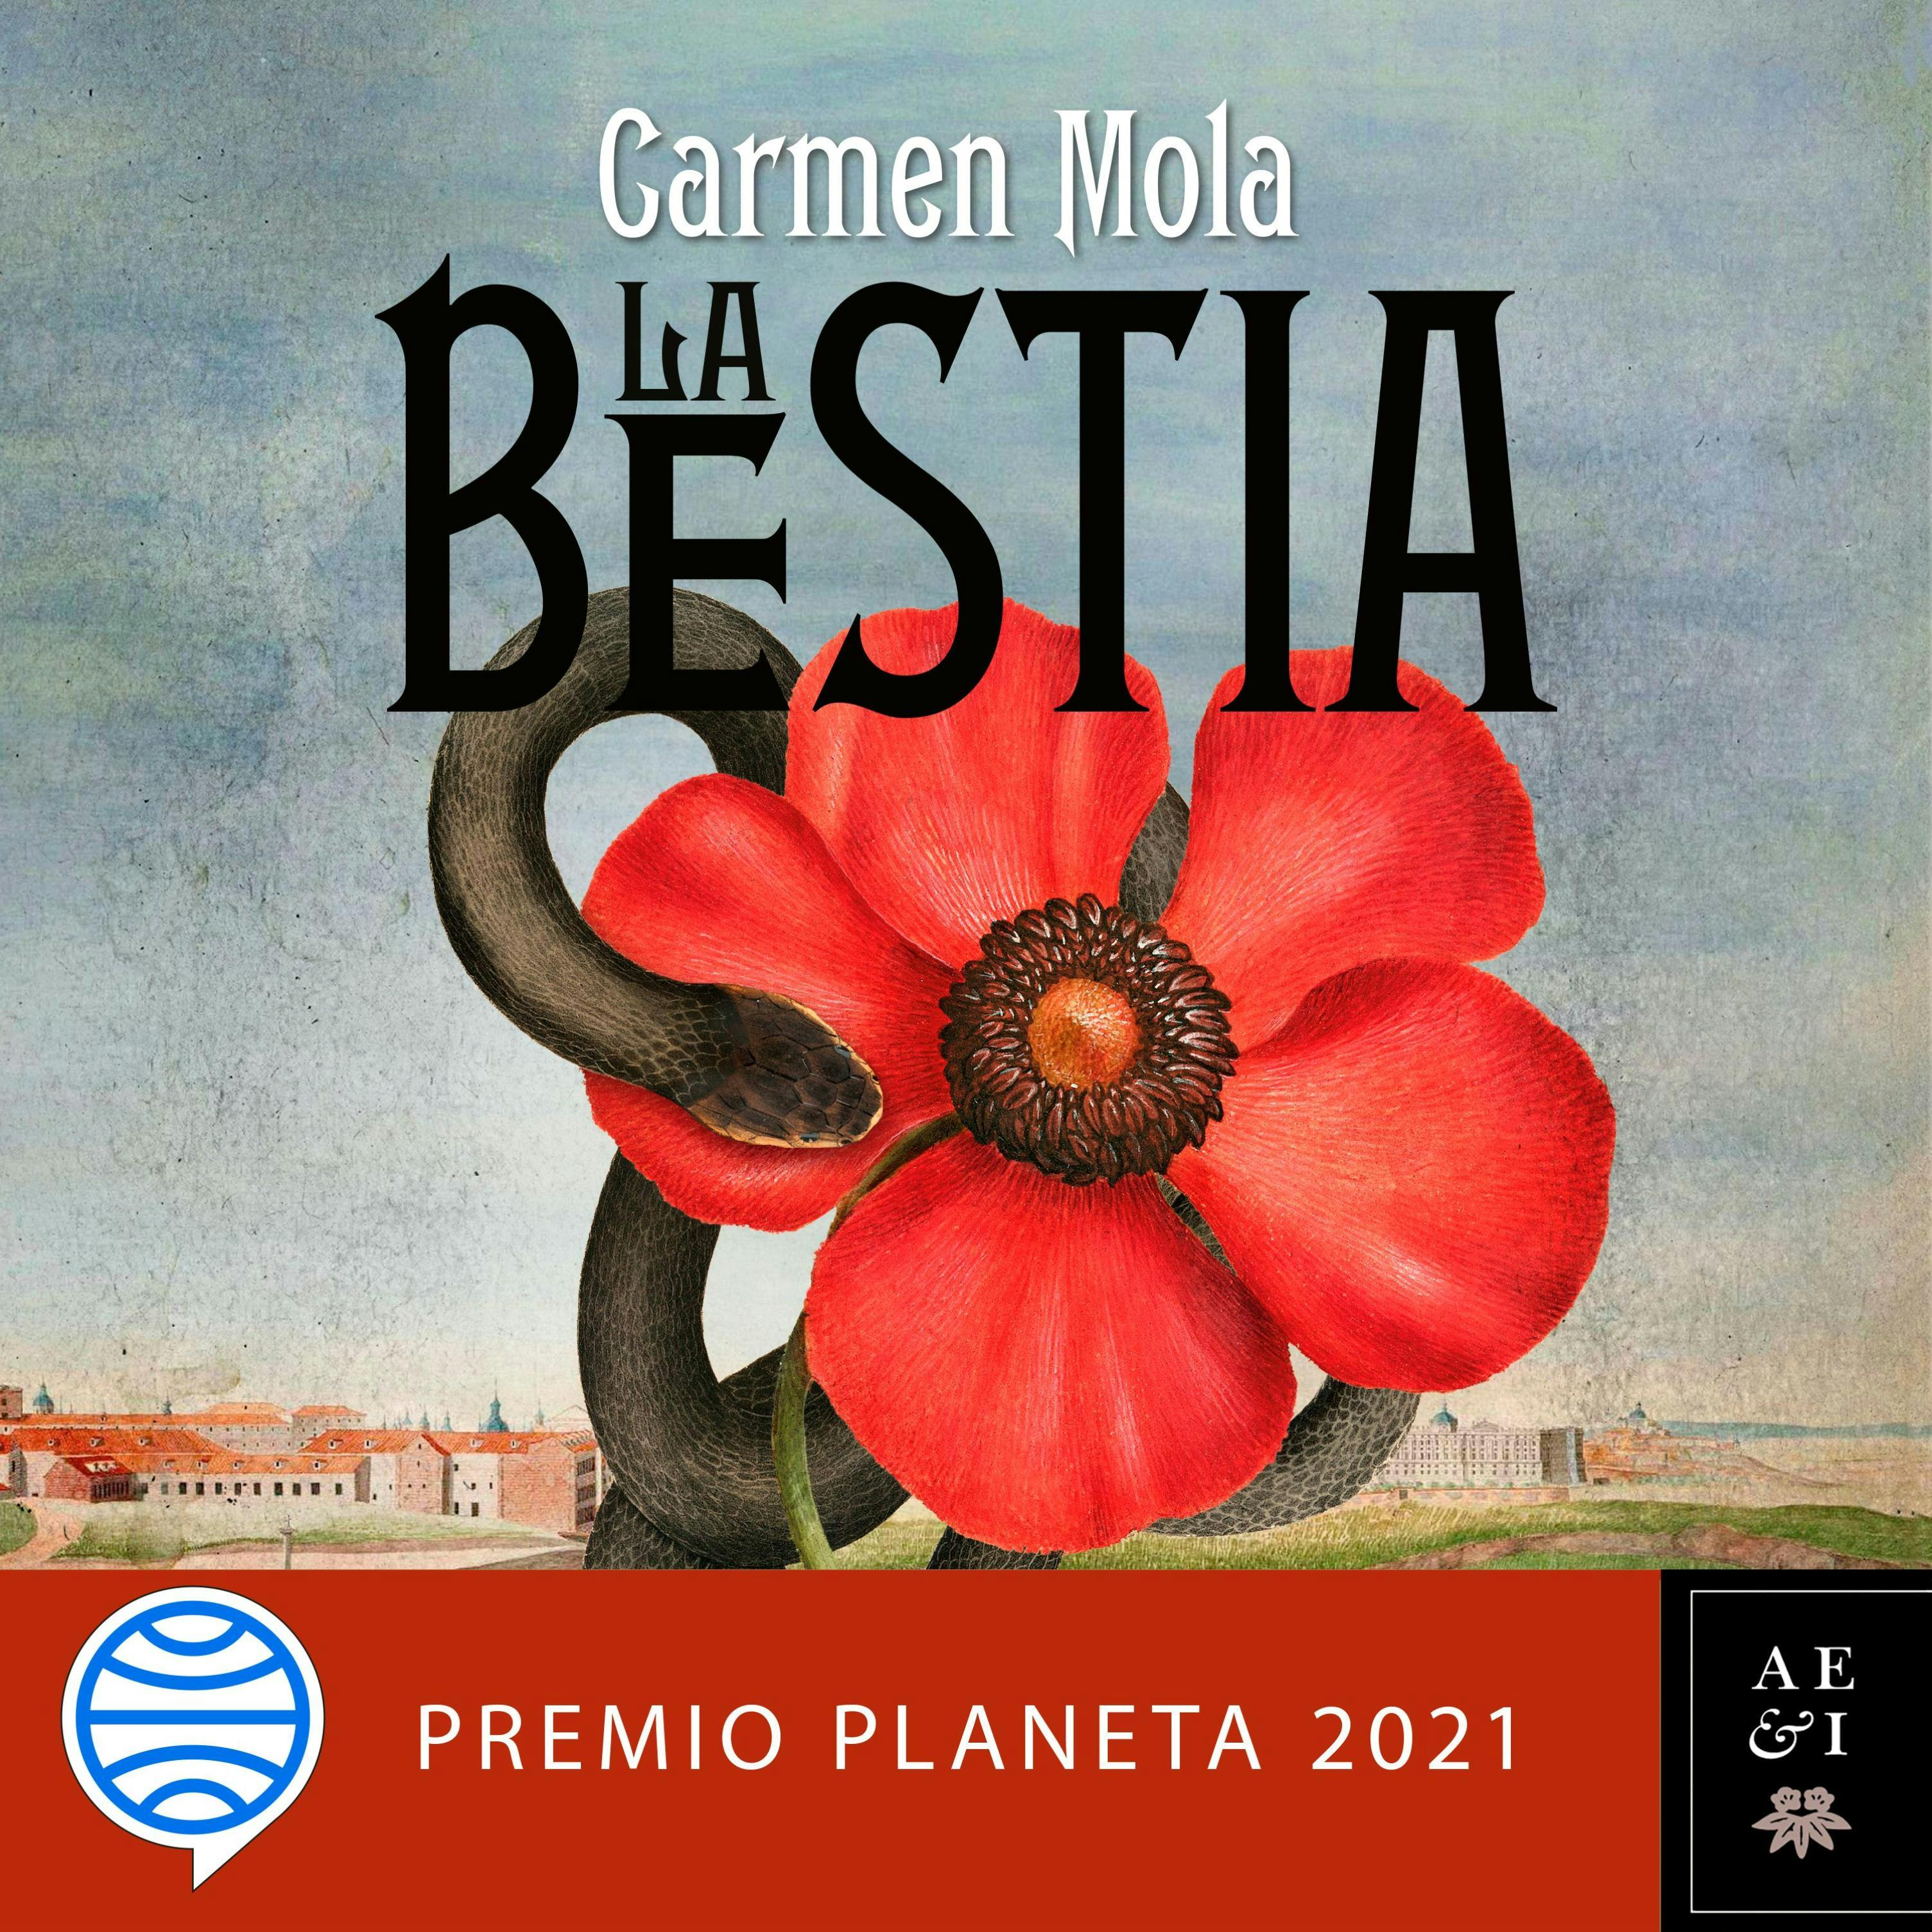 La Bestia: Premio Planeta 2021 - undefined